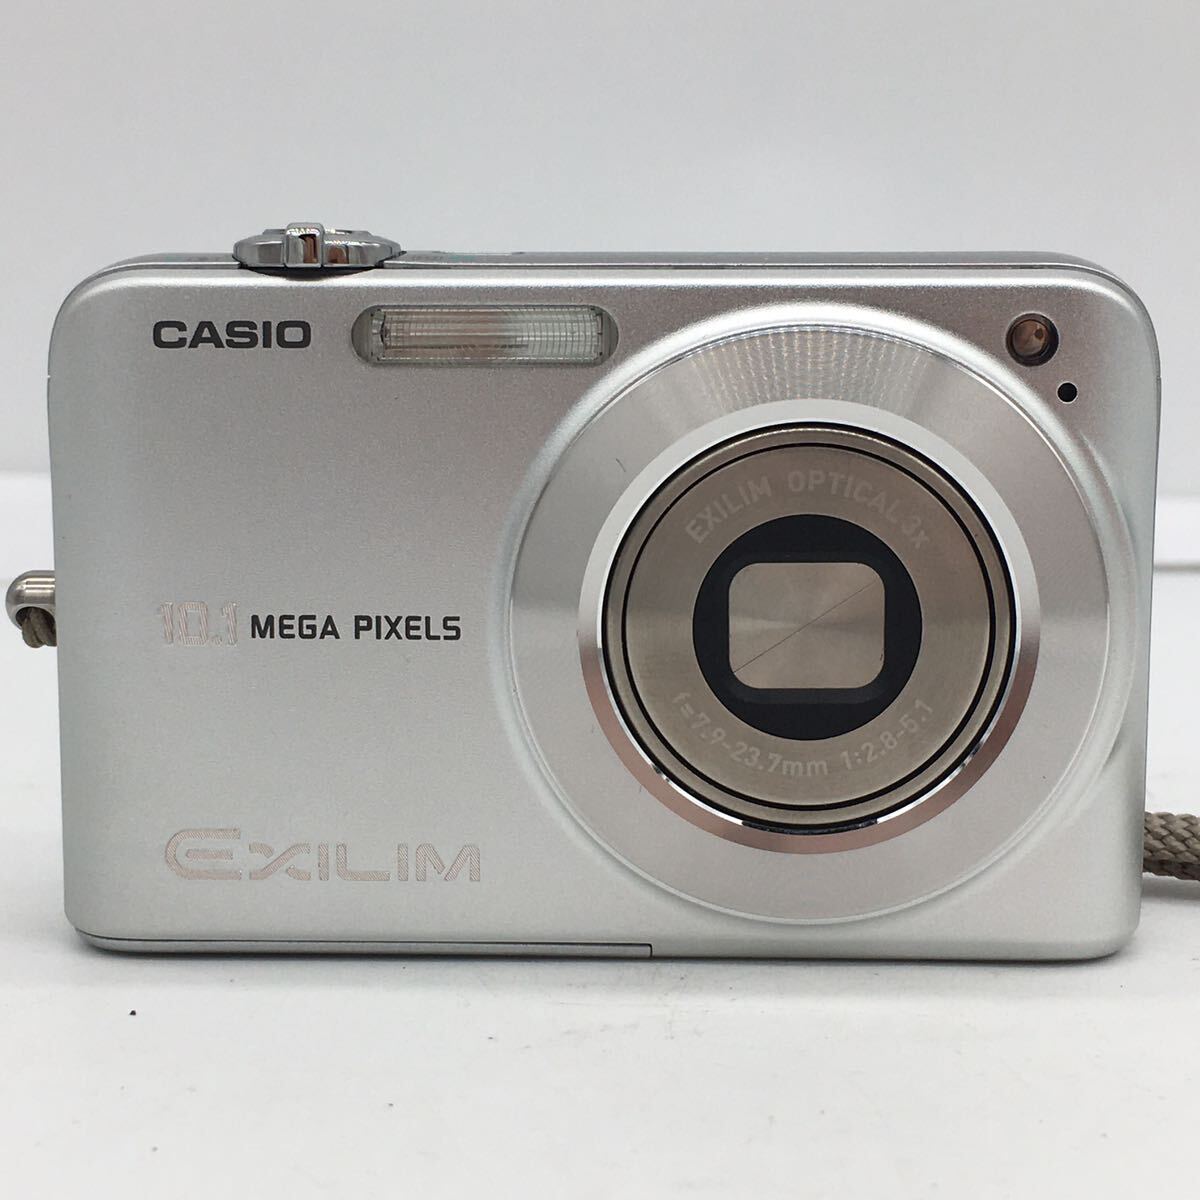 CASIO カシオ EXILIM EX-Z1050 シルバー コンパクト デジタル カメラ 充電器・バッテリー・説明書・SDカード1GB・元箱付属 動作確認済の画像2